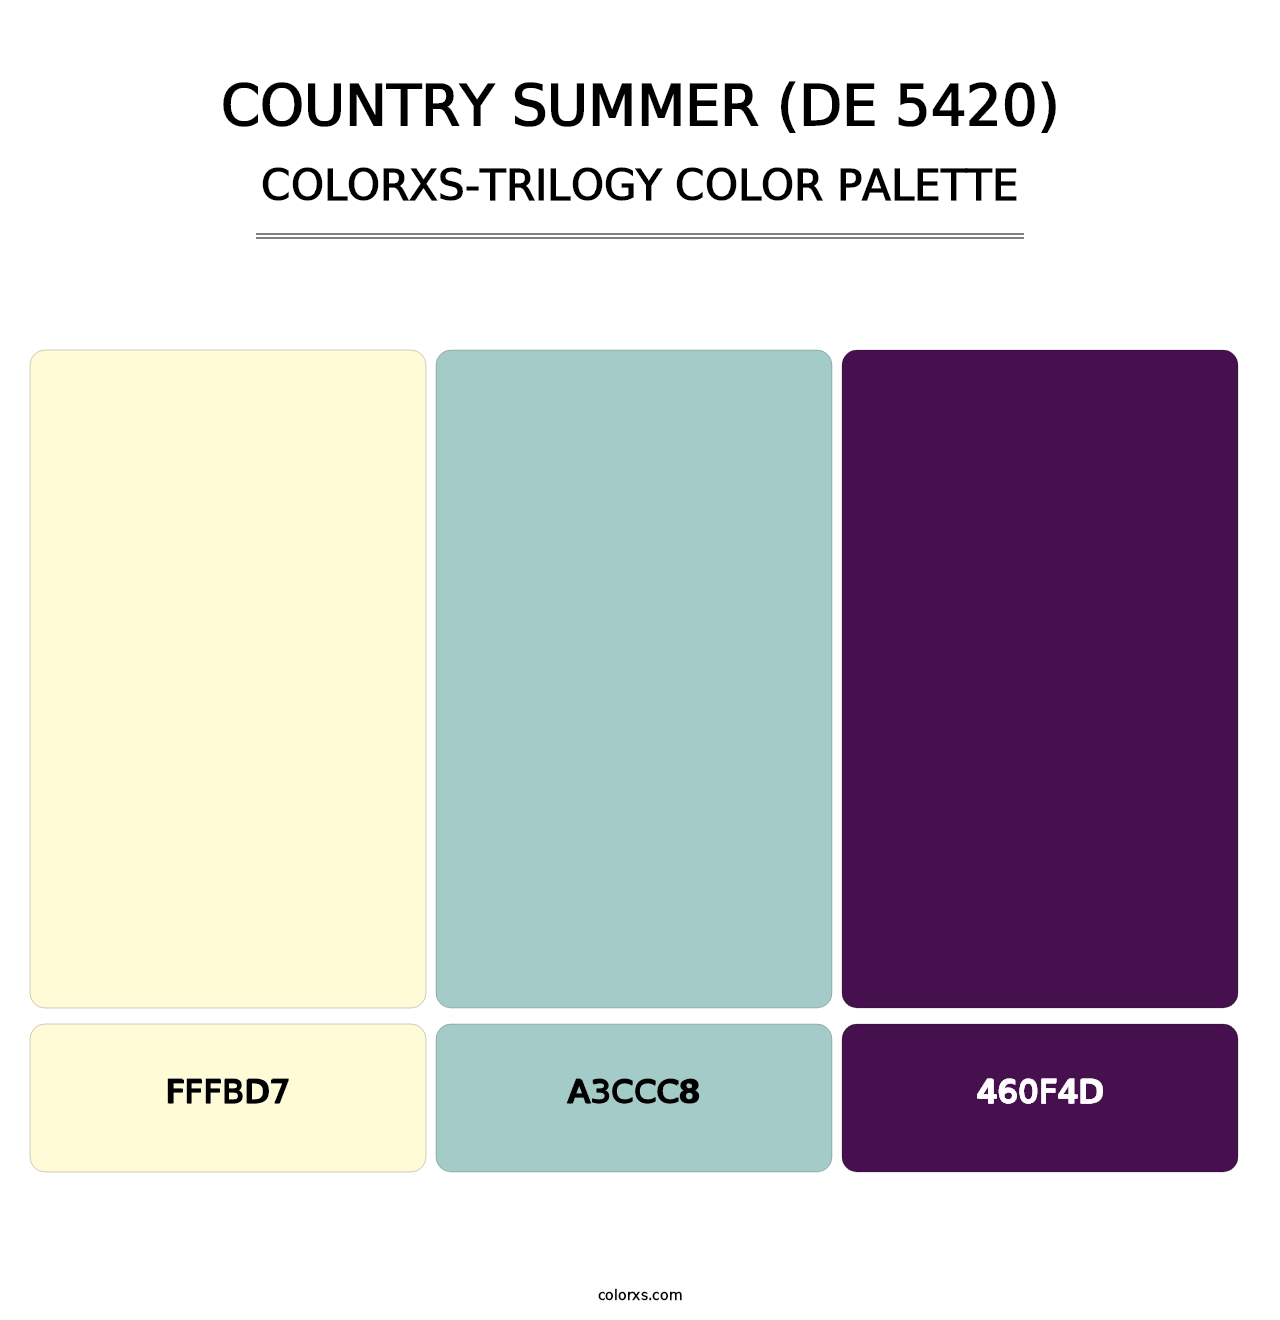 Country Summer (DE 5420) - Colorxs Trilogy Palette